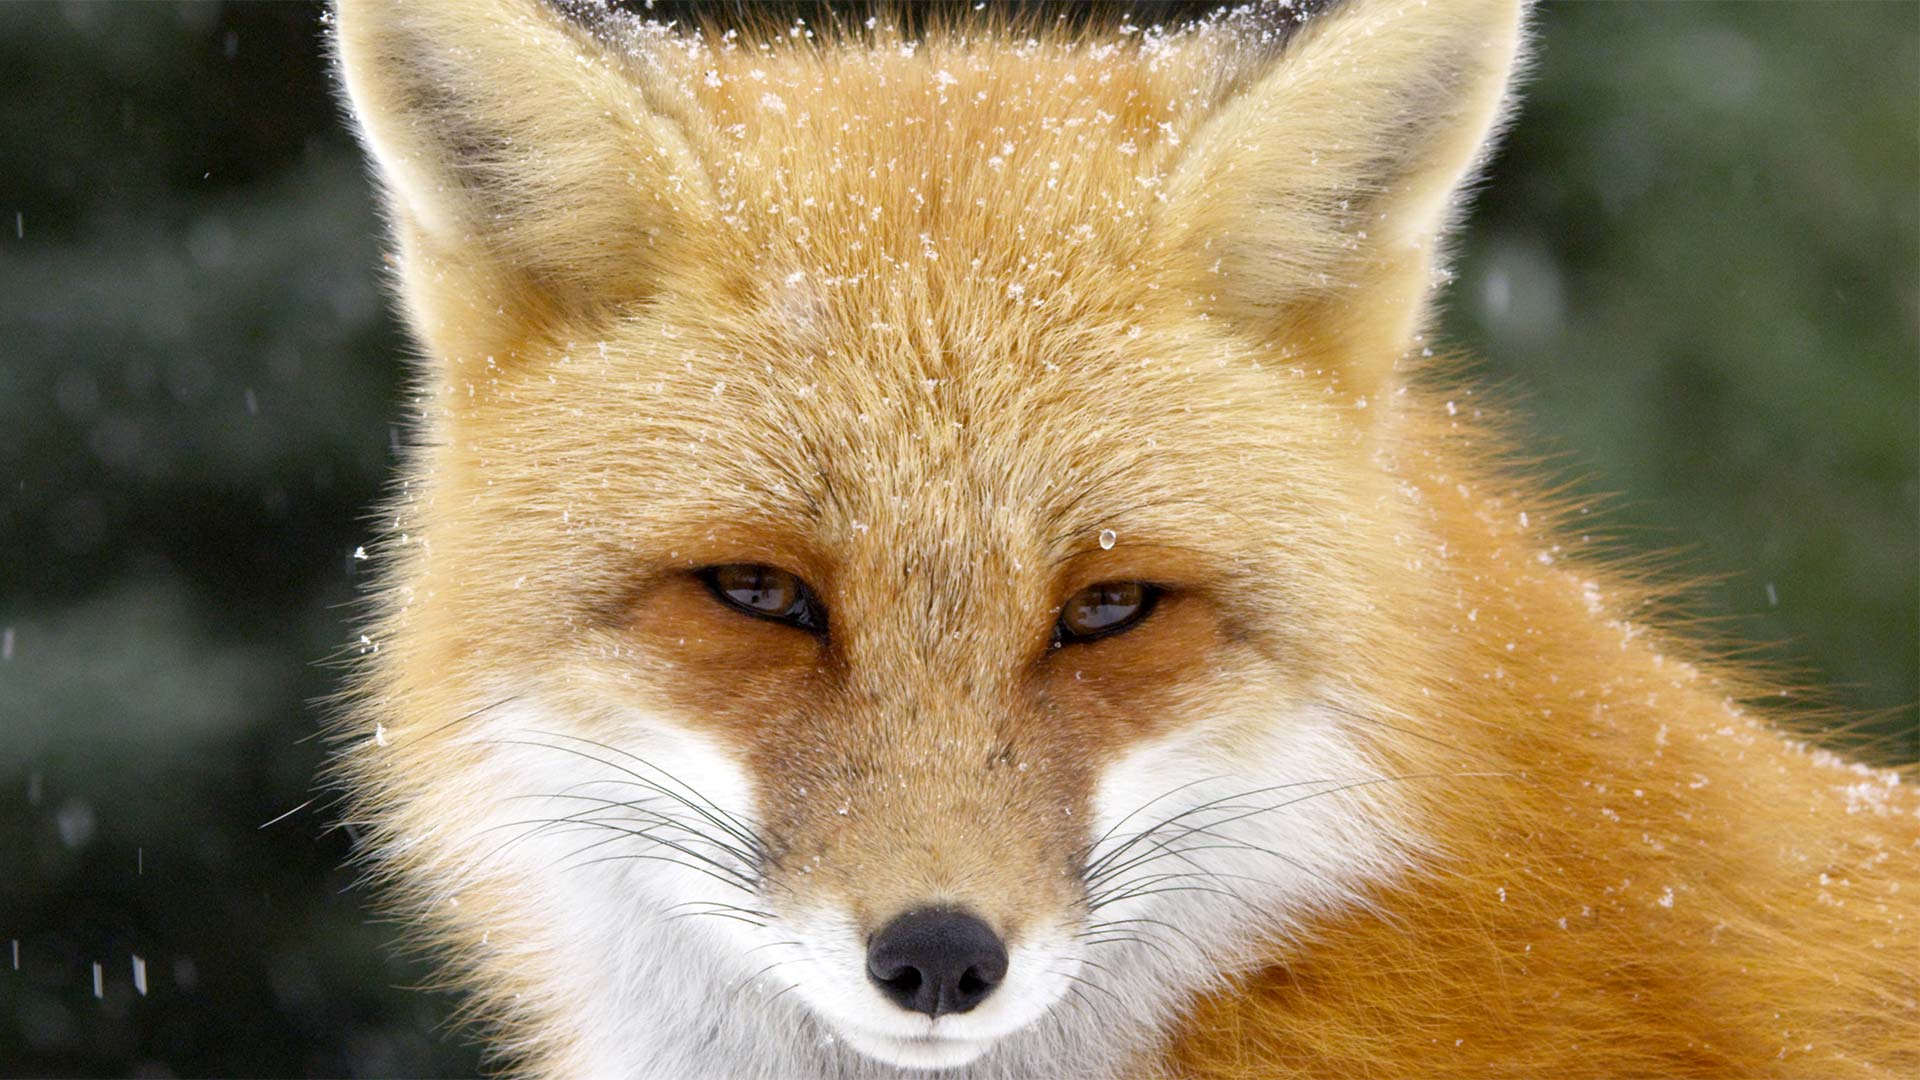 CU Red fox in snow storm, Algonquin Park, Ontario, Canada